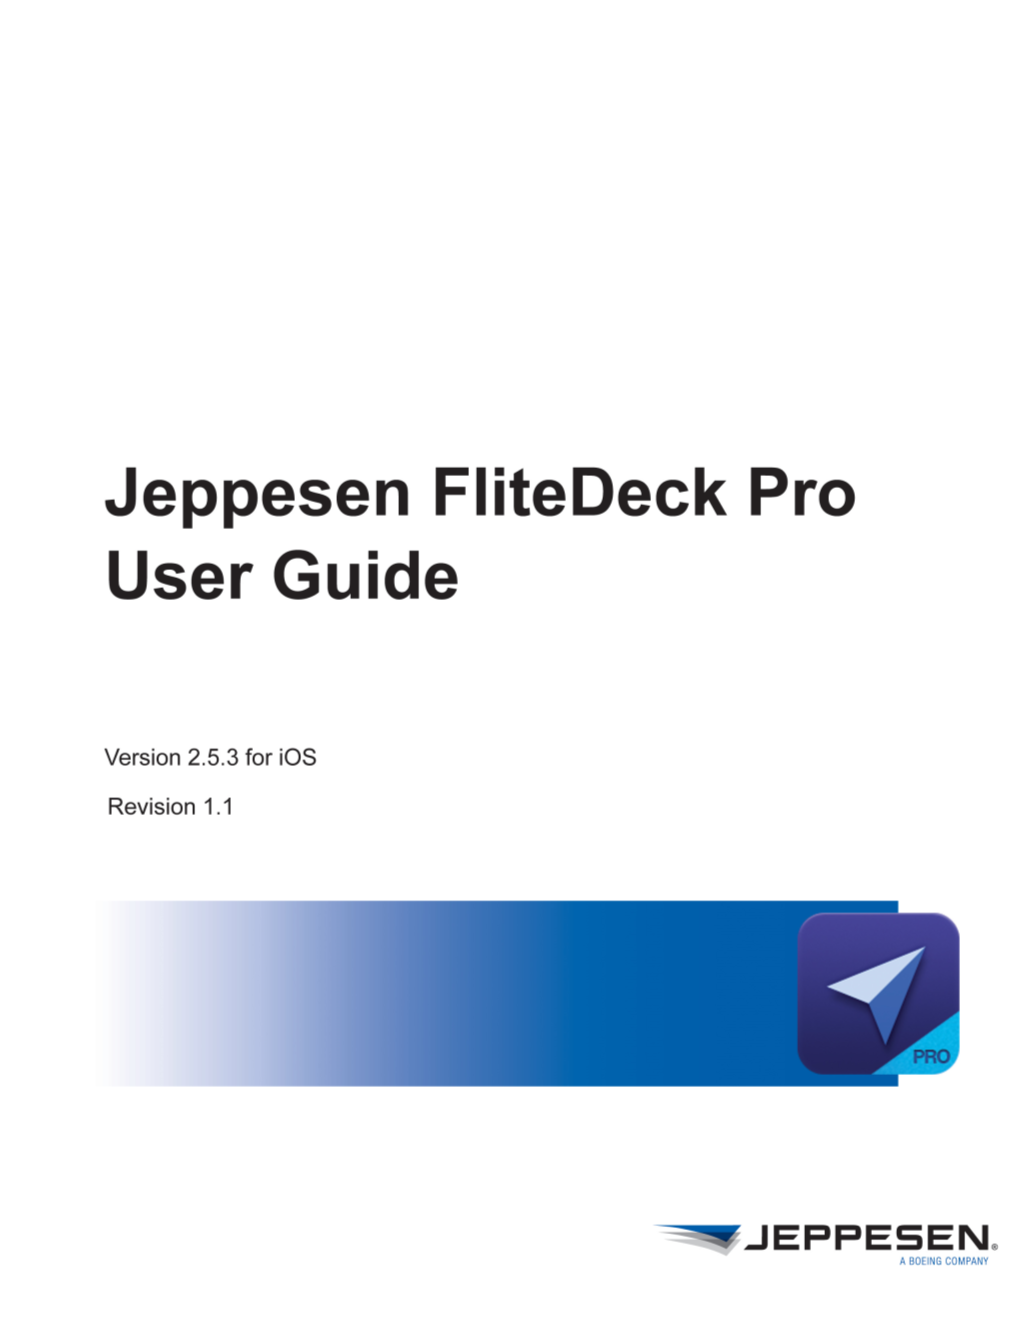 Jeppesen Flitedeck Pro User Guide